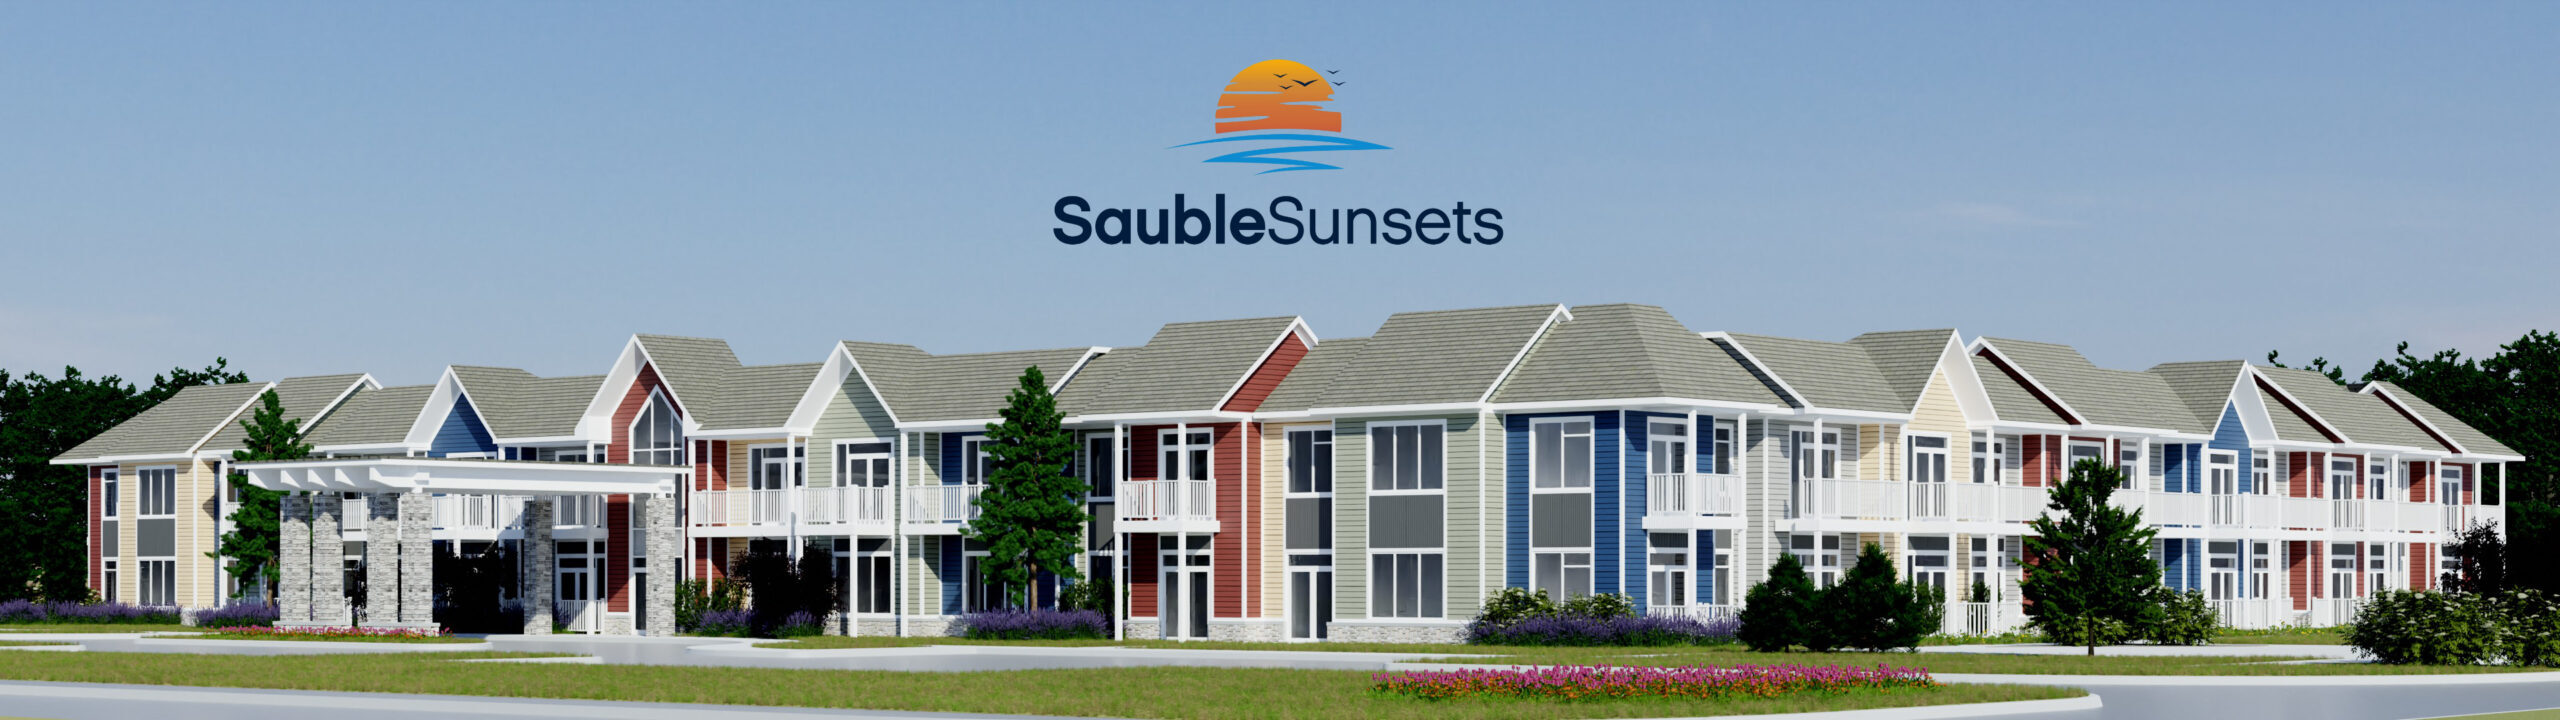 Sauble Sunsets - Sauble's Premier Retirement Community